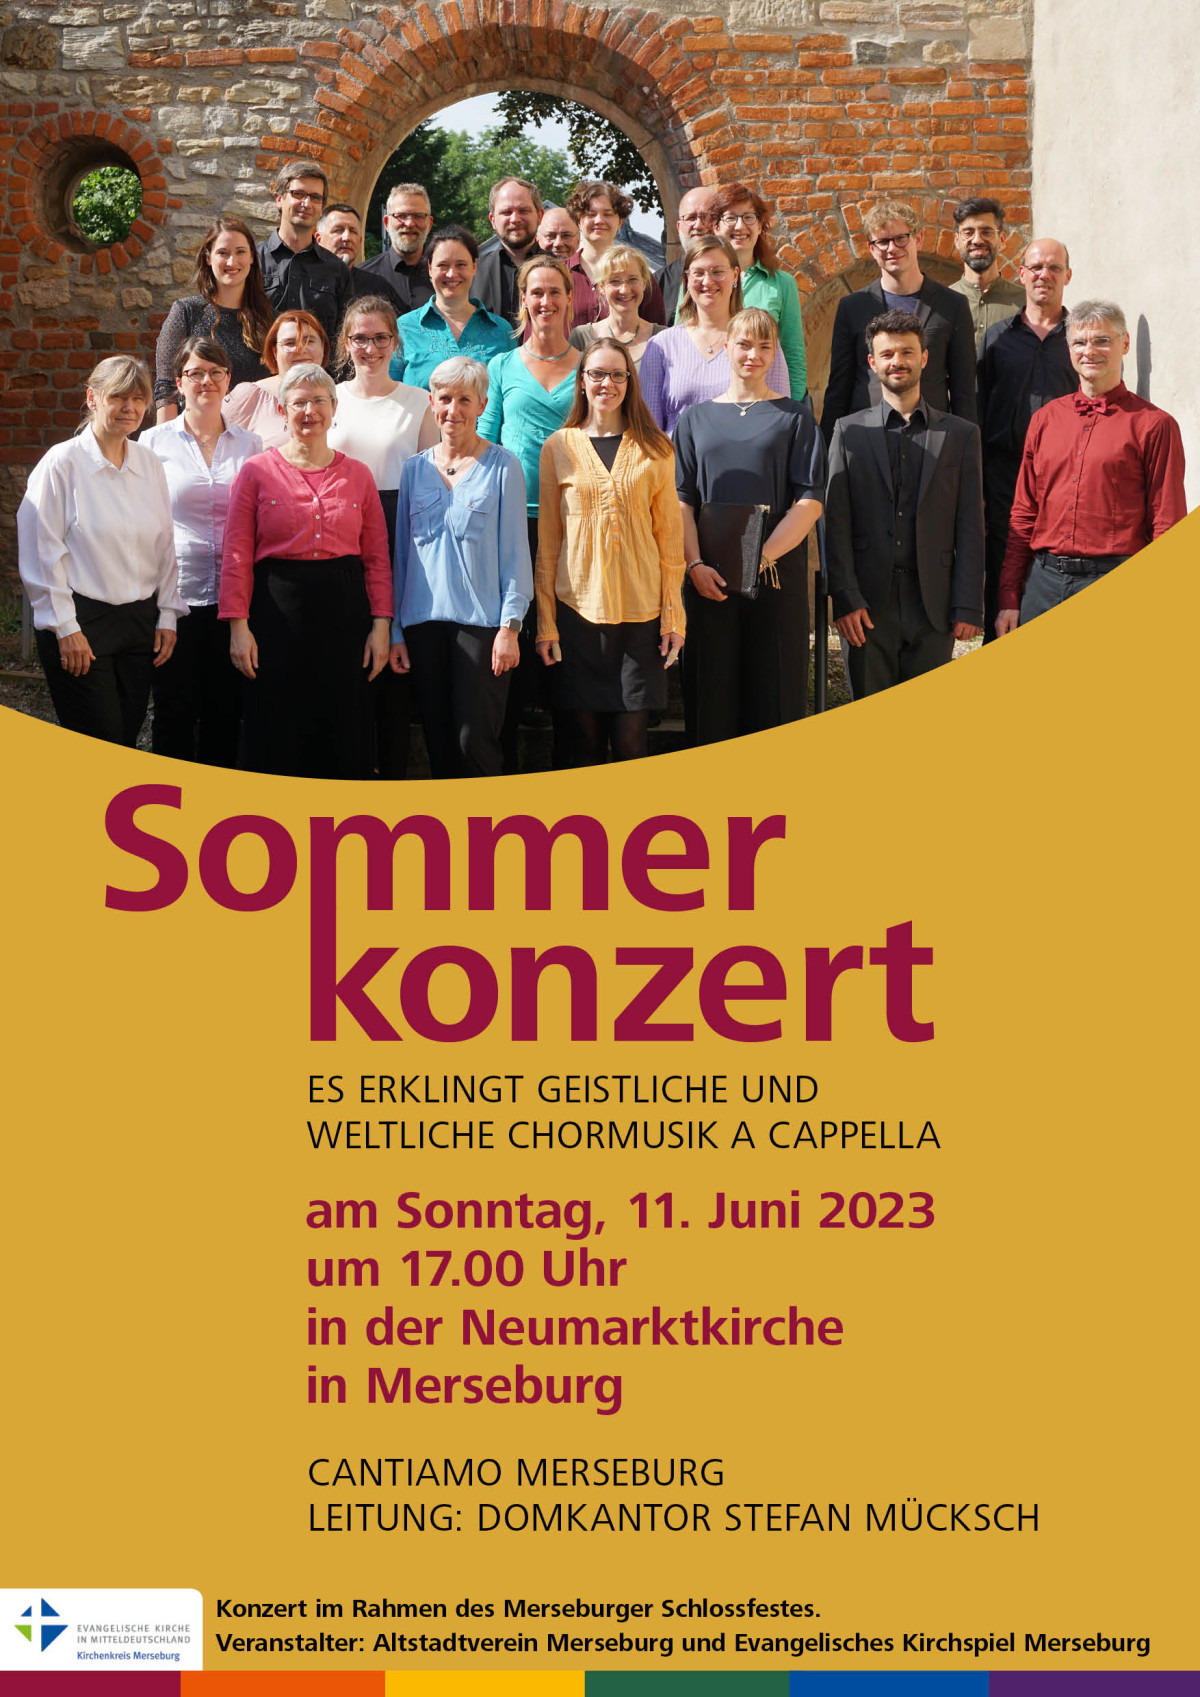 Plakat Sommerkonzert in der Neumarktkirche Merseburg am 11. Juni 2023 um 17 Uhr